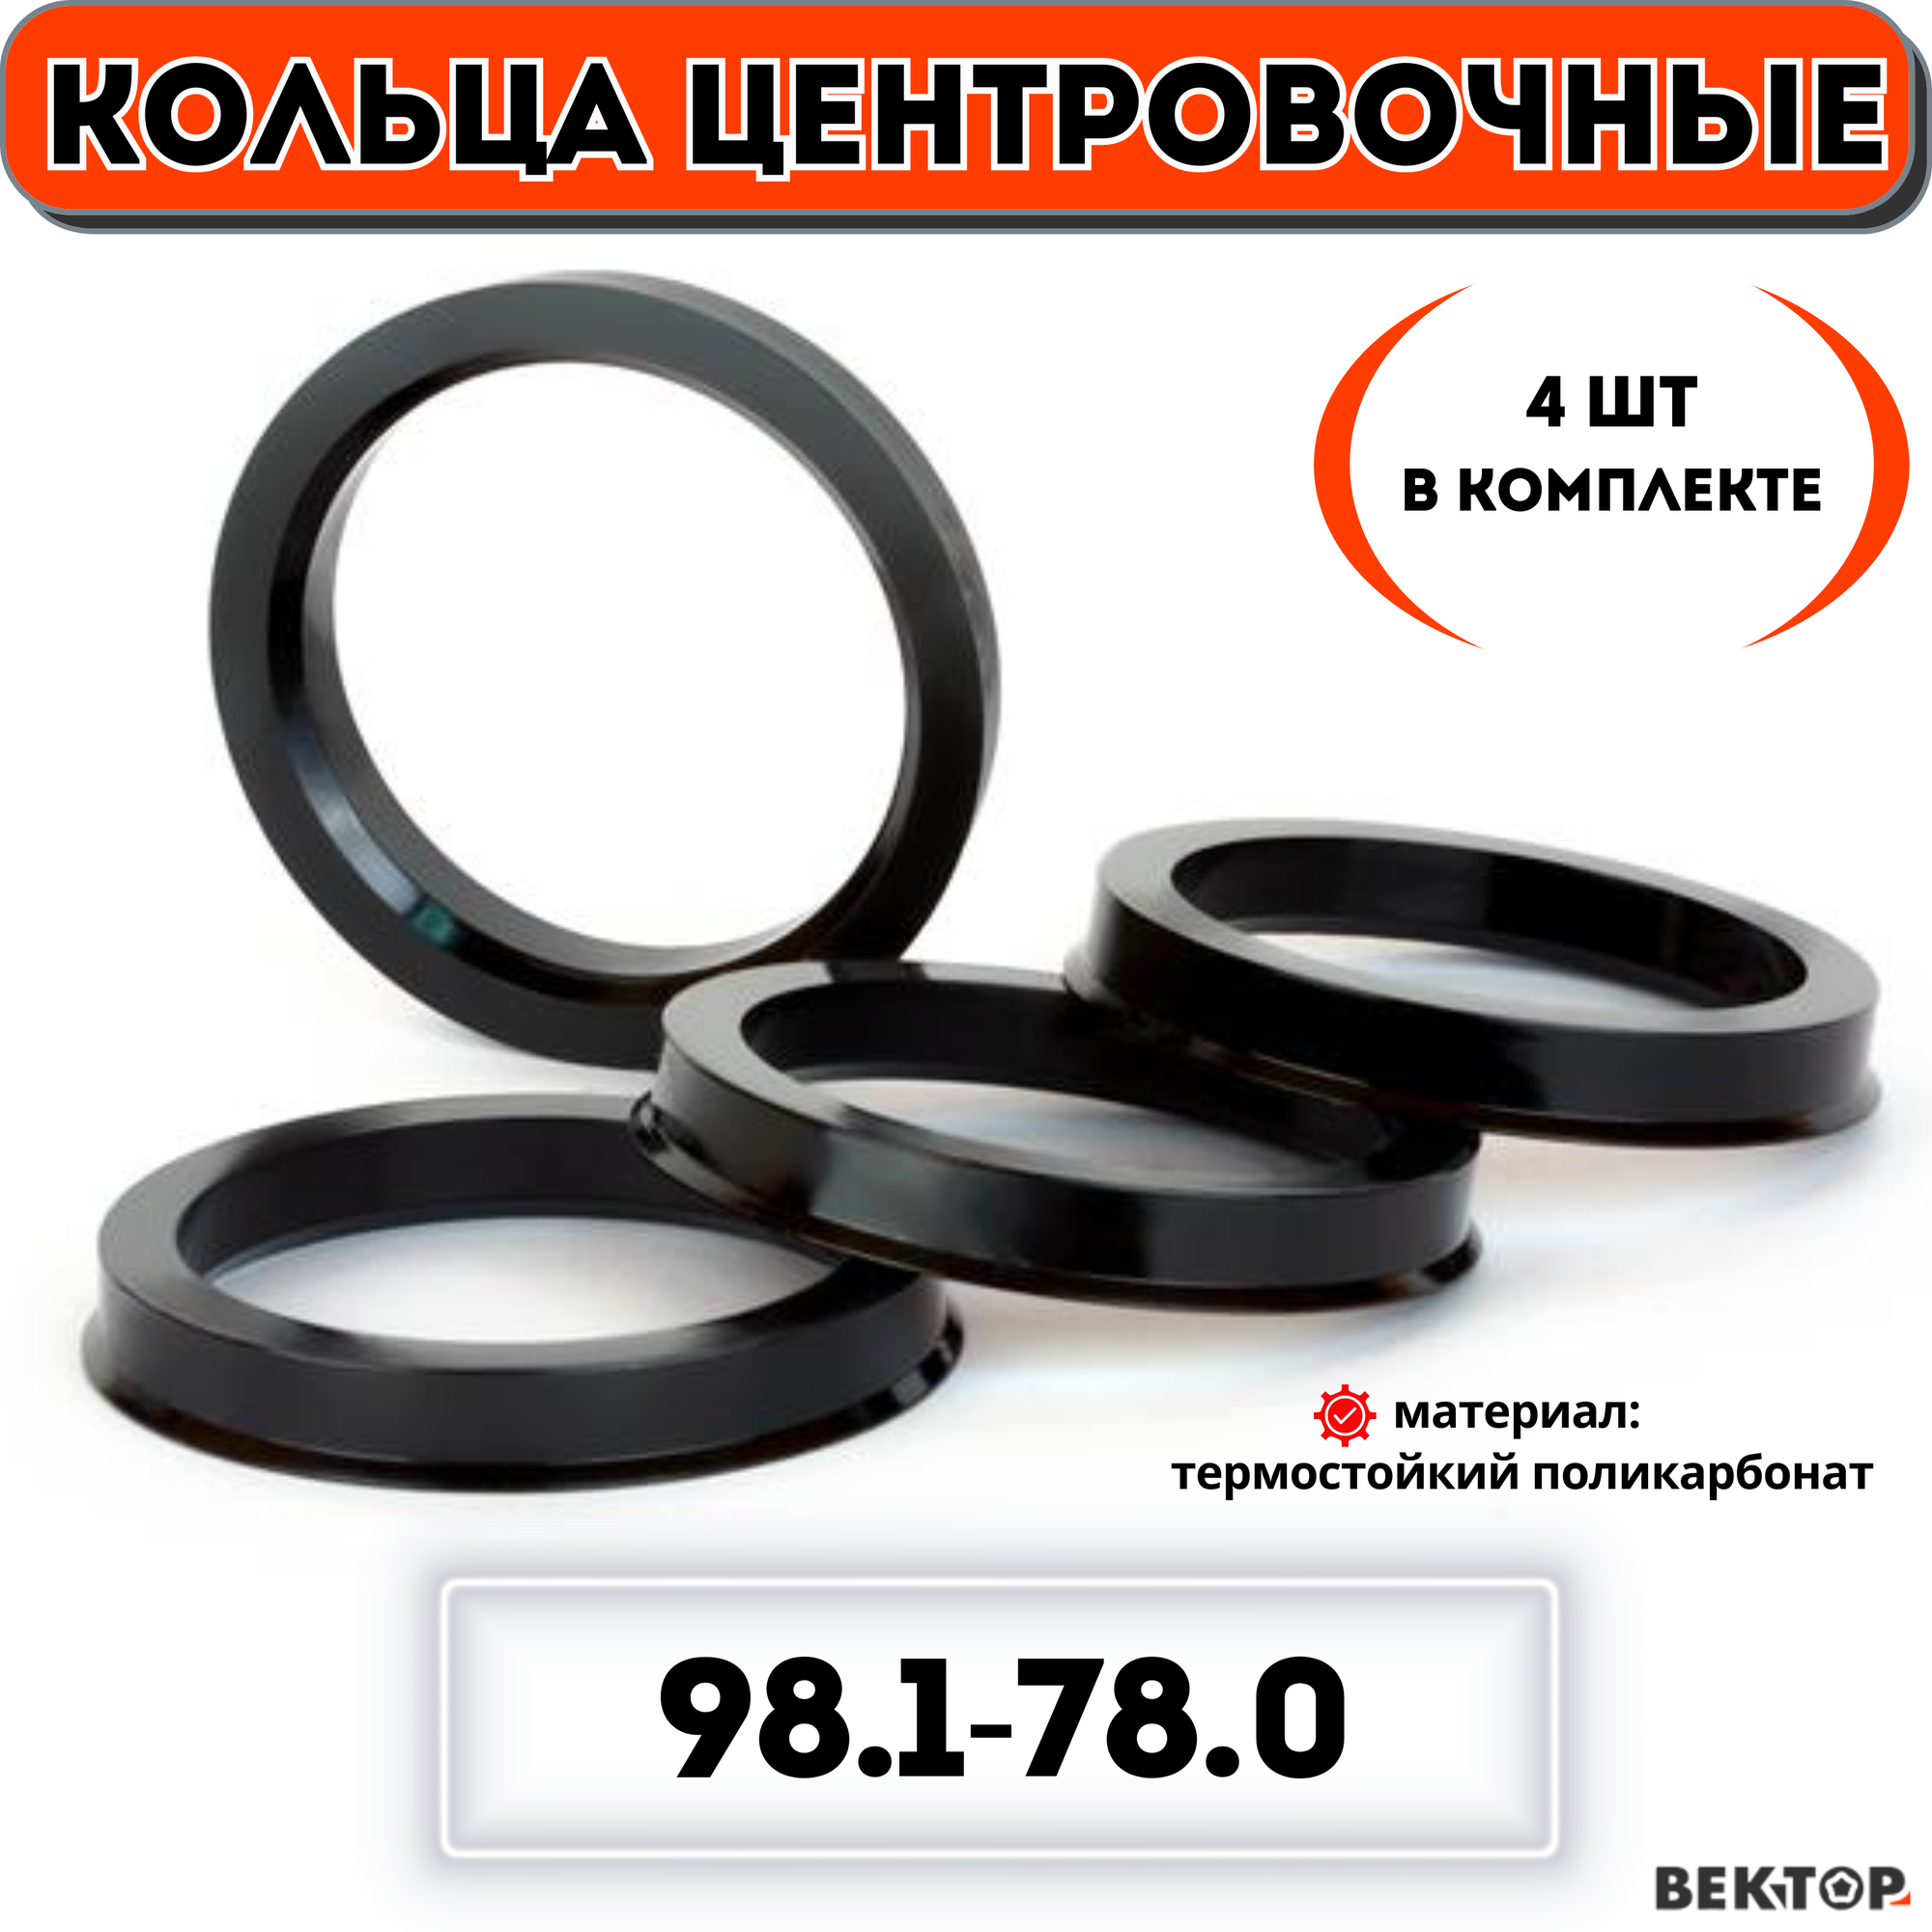 Кольца центровочные для автомобильных дисков 981-780 "вектор" (к-т 4 шт.)